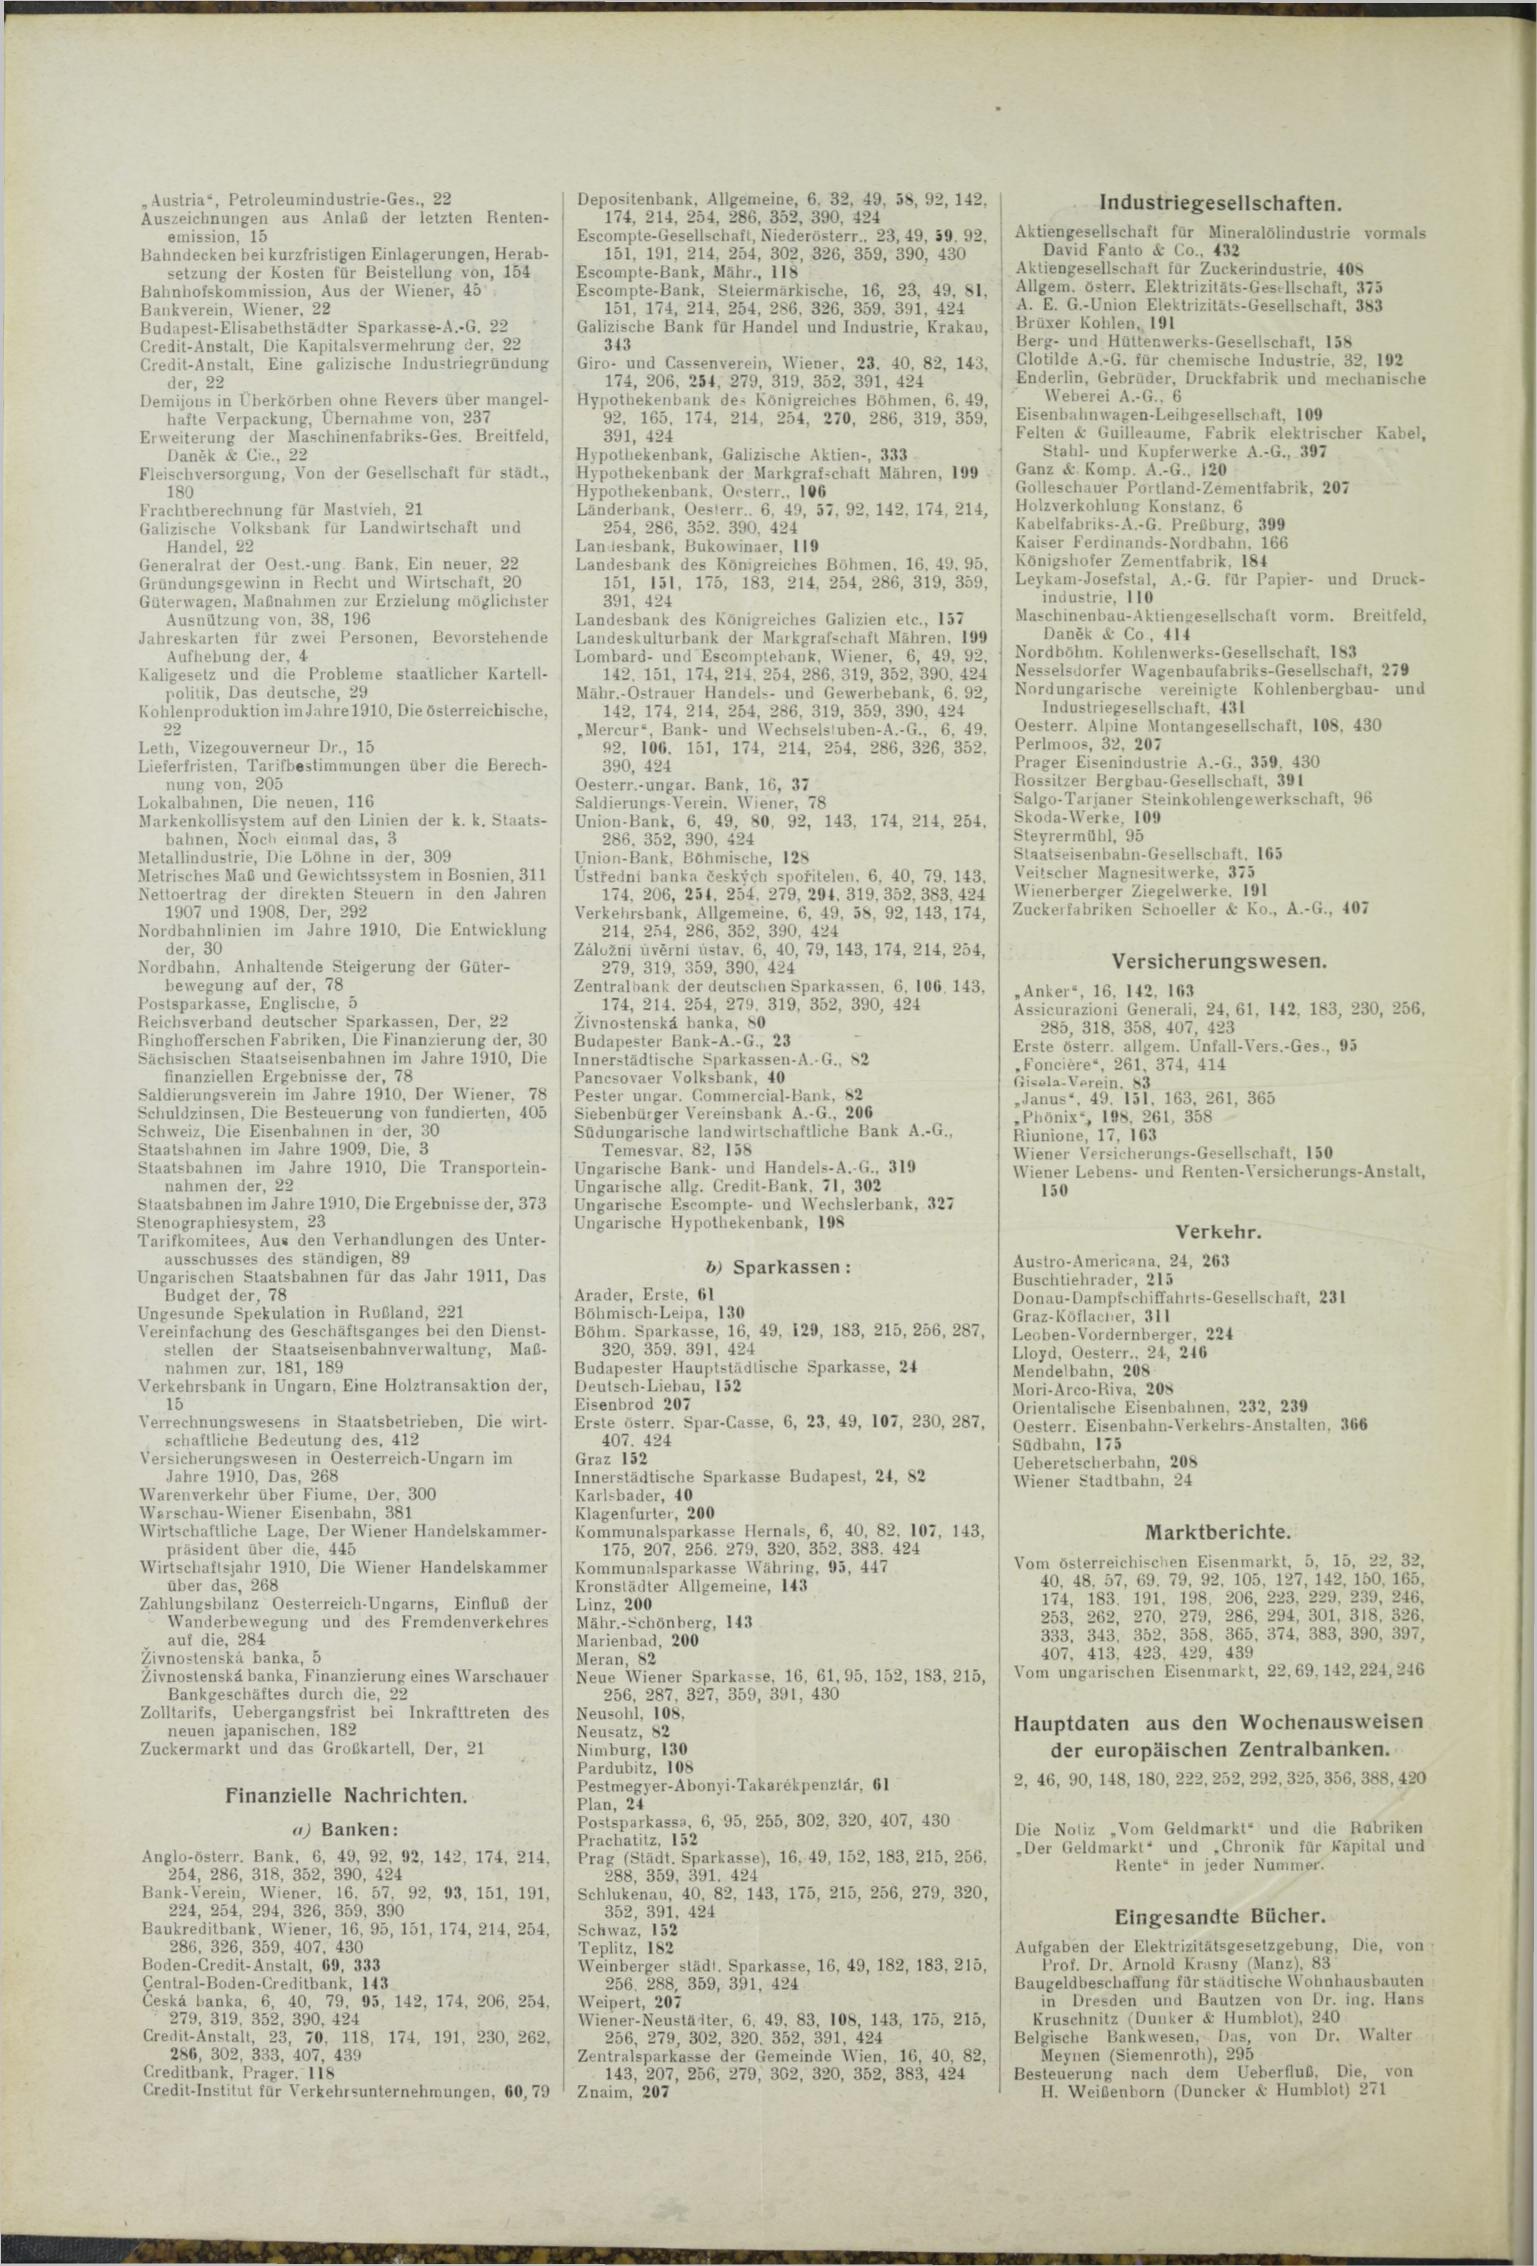 Der Tresor 17.06.1911 - Seite 10